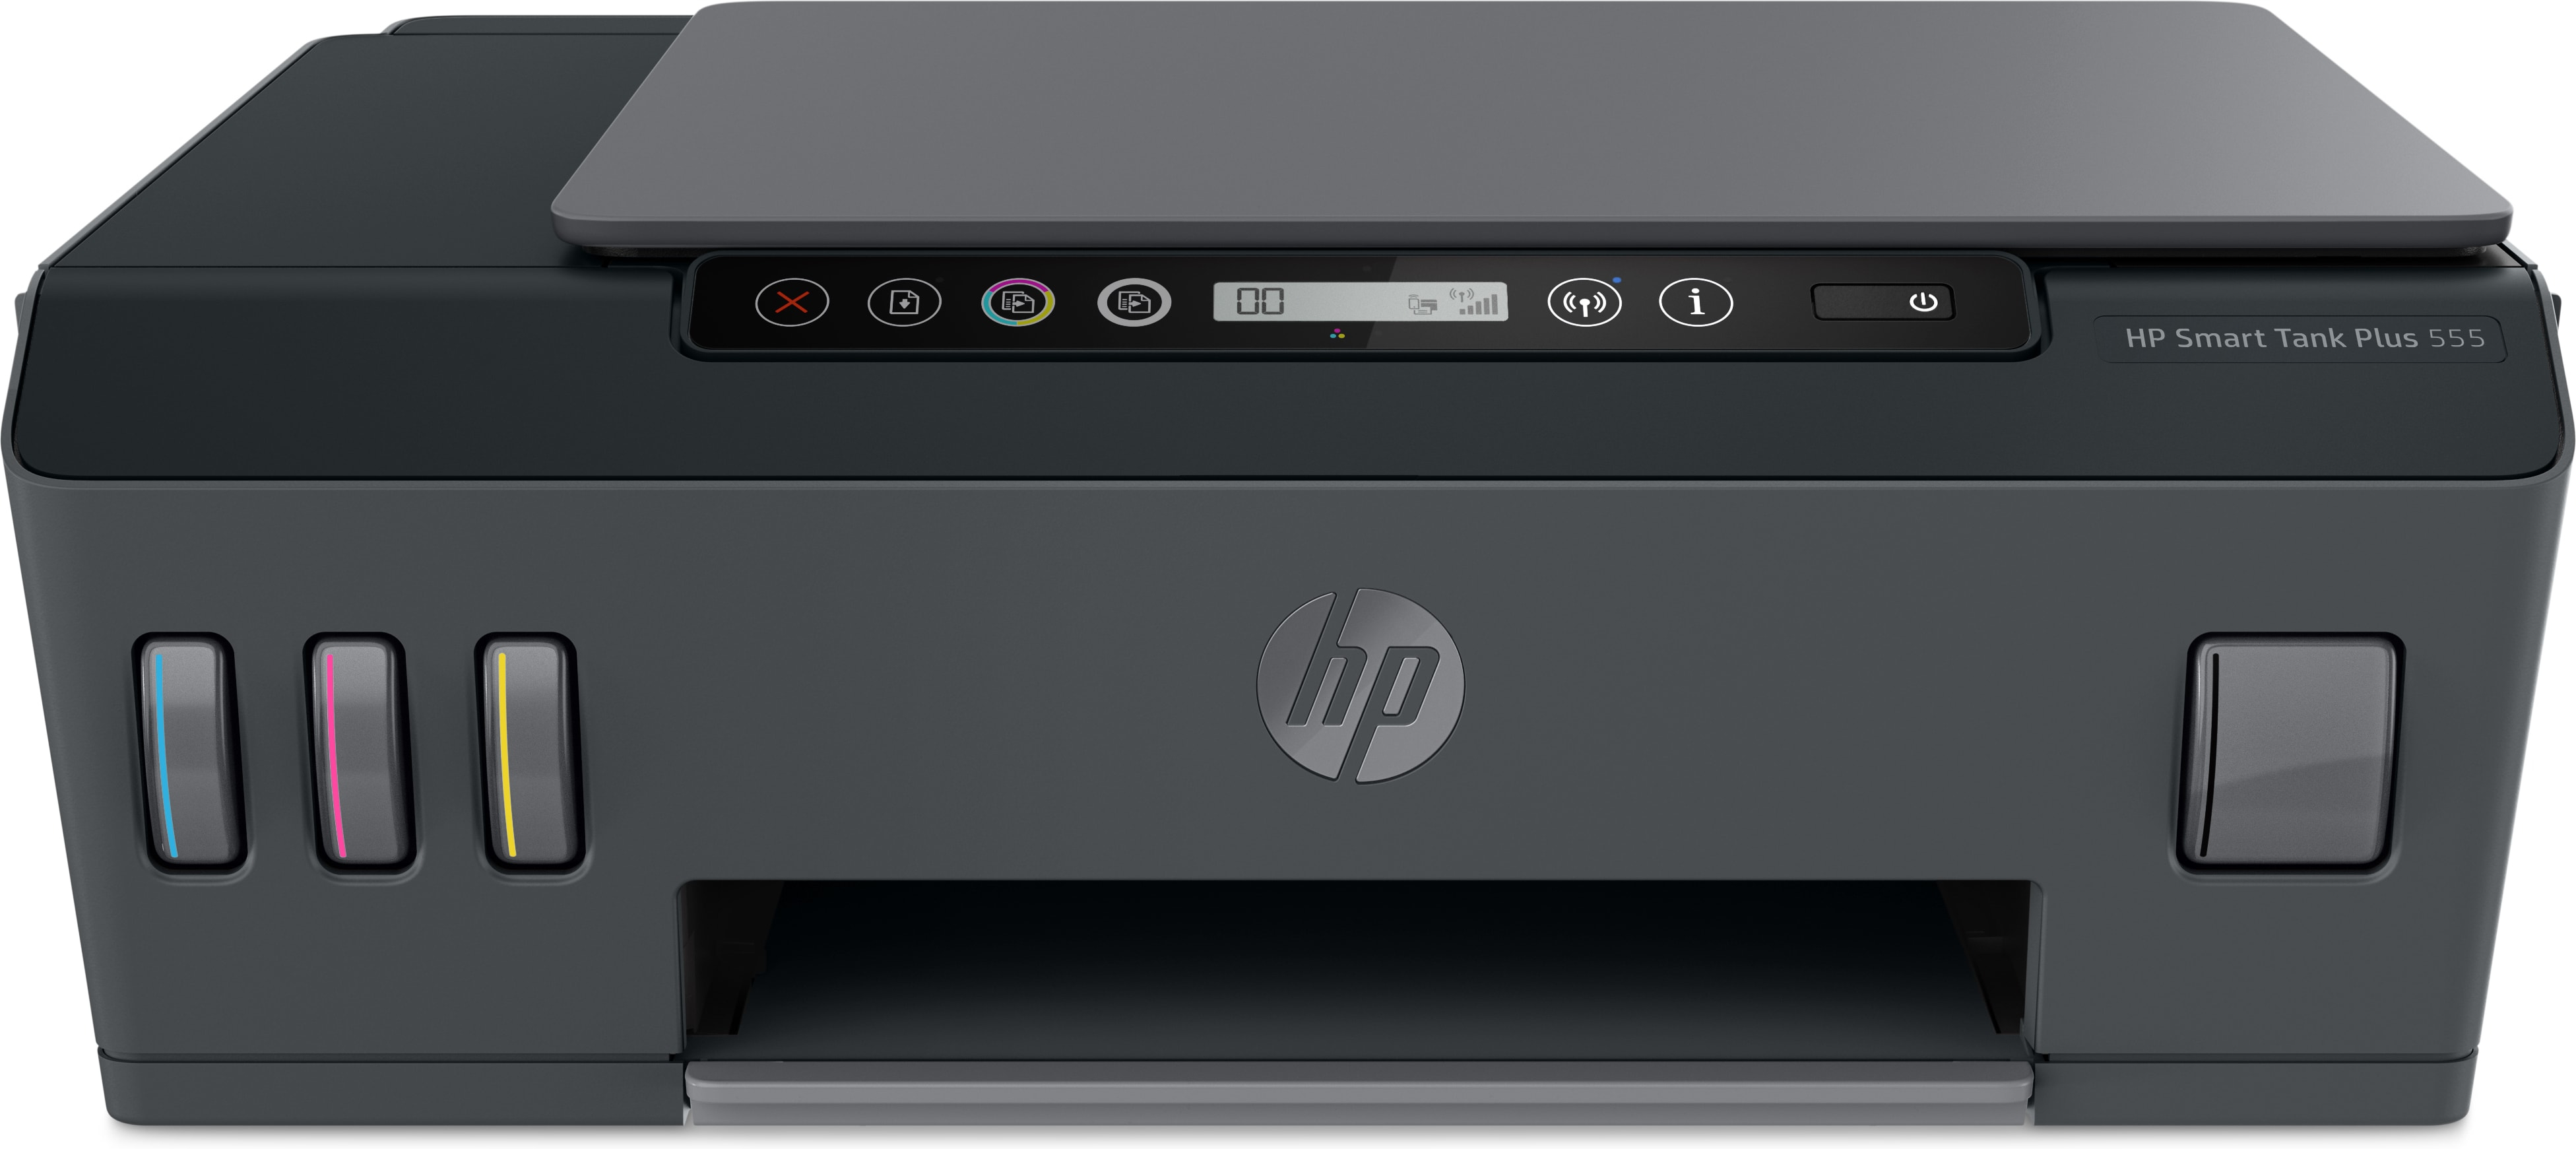 Image of HP Smart Tank Plus Stampante multifunzione wireless 555, Colore, Stampante per Casa, Stampa, scansione, copia, wireless, scansione verso PDF